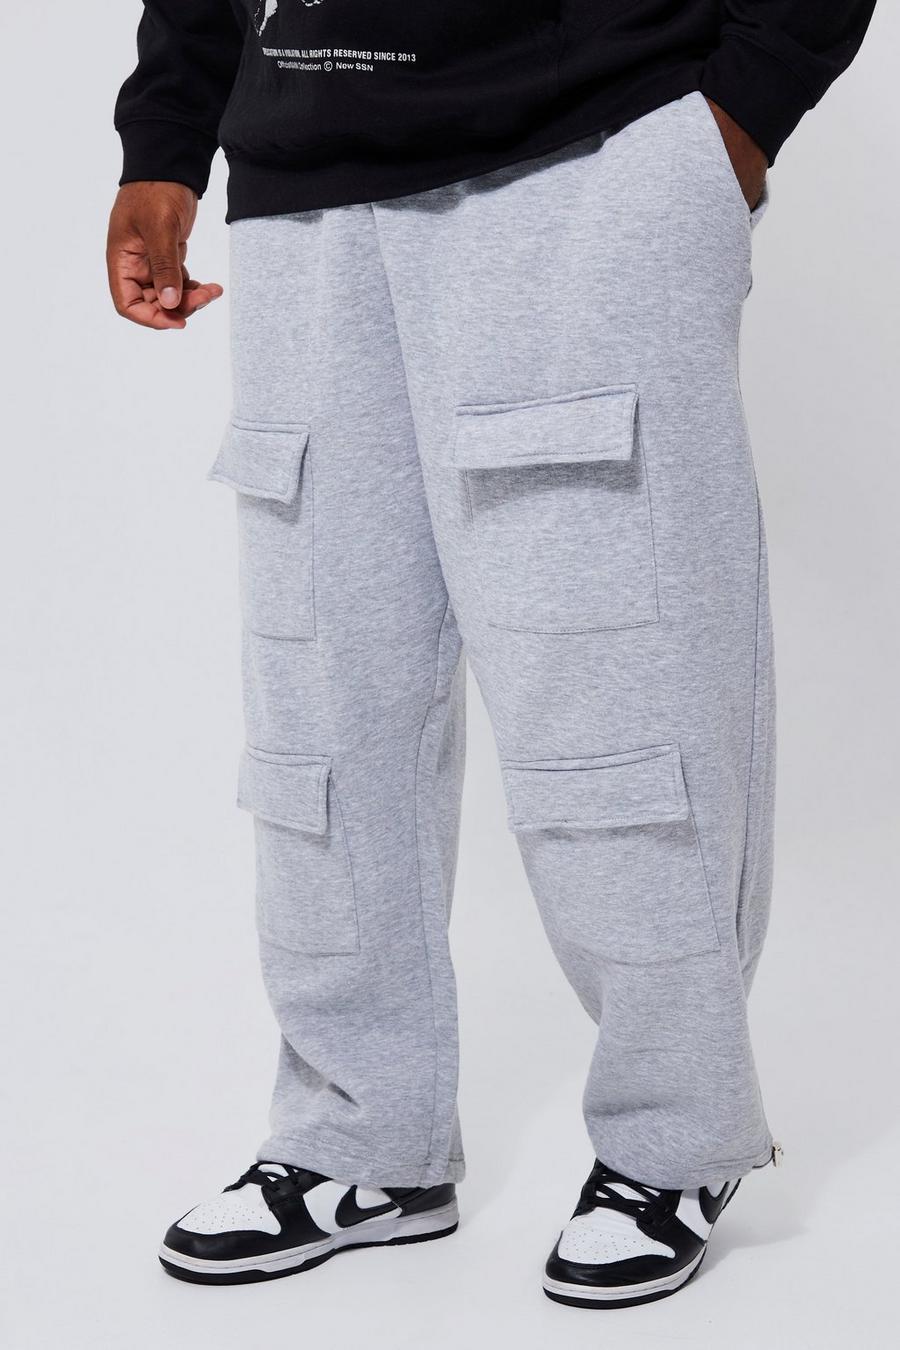 Pantalón deportivo Plus holgado con bolsillos cargo frontales, Grey marl gris